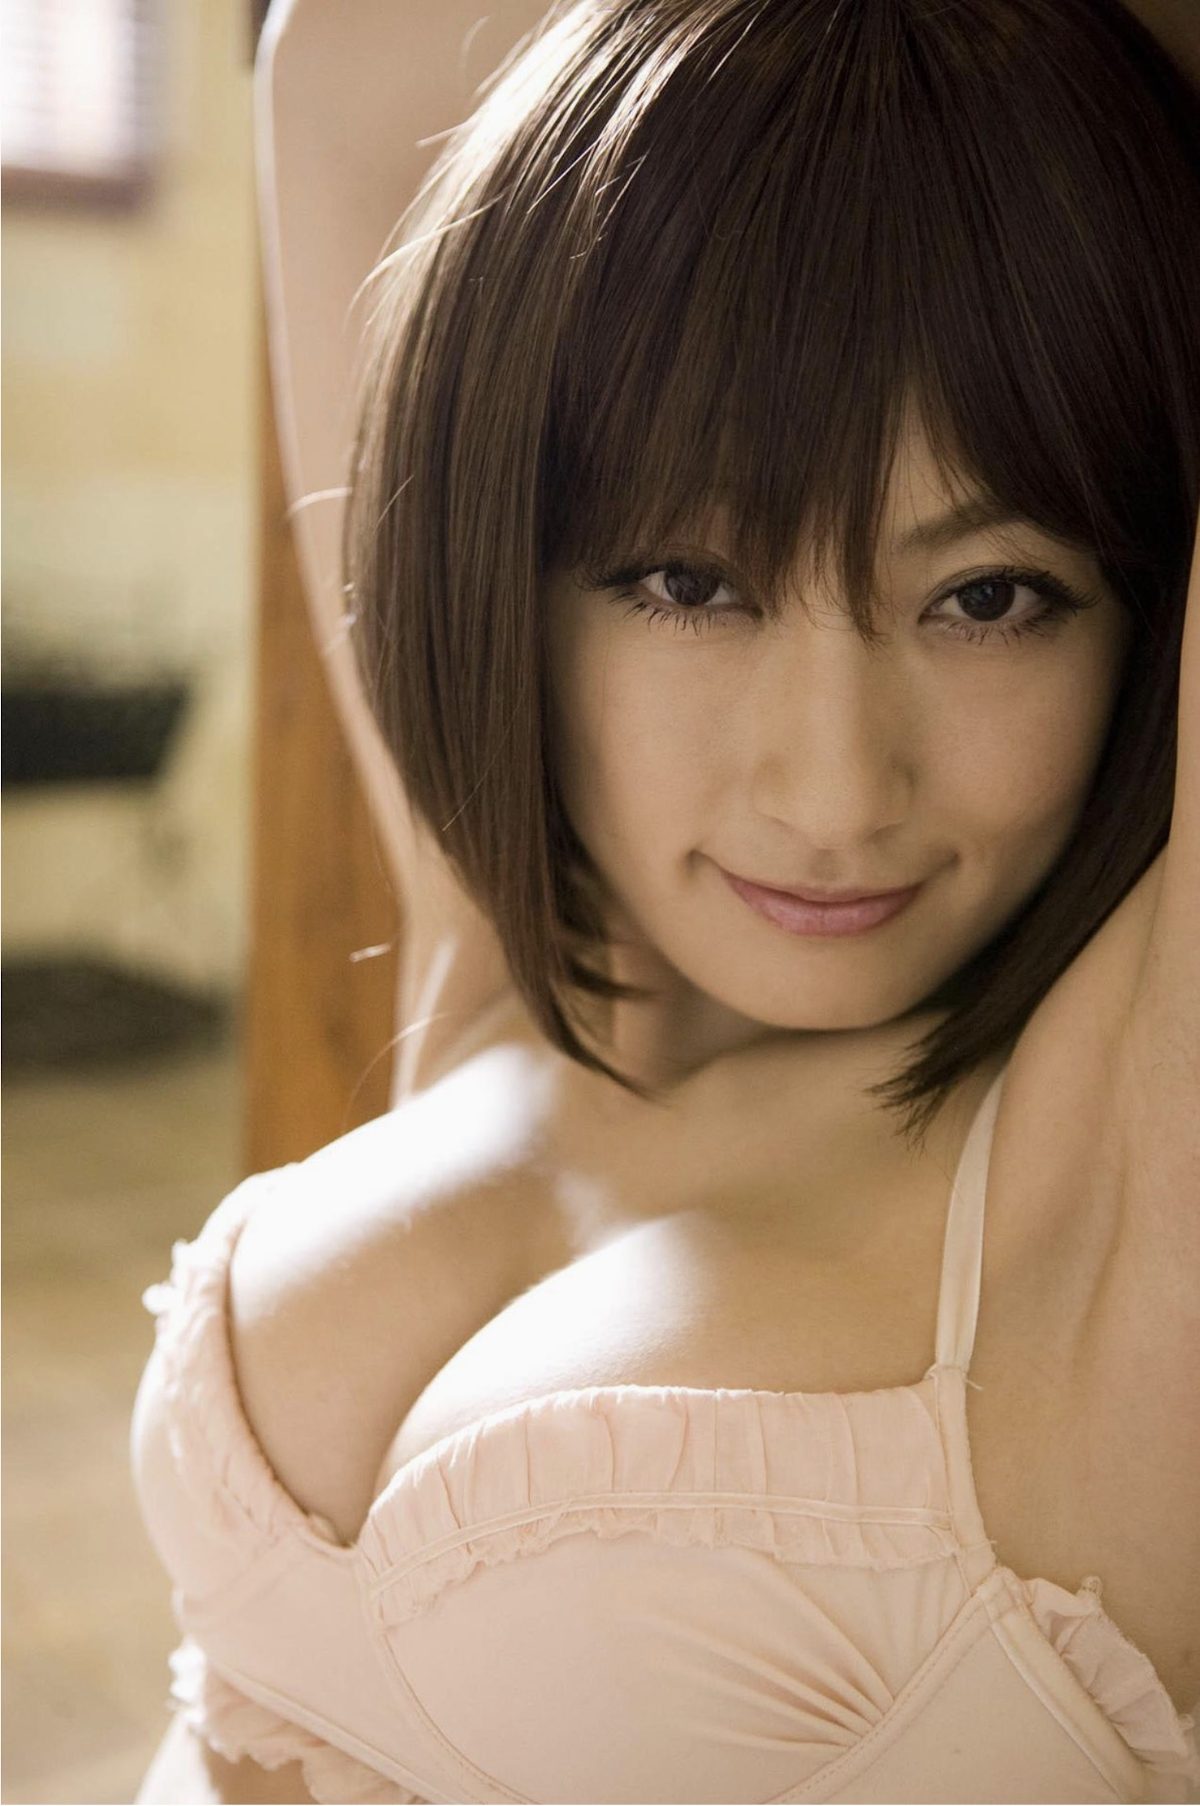 Asian Pretty Girl Yoko Kumada 熊田曜子 Dignity 0048 4968102062.jpg